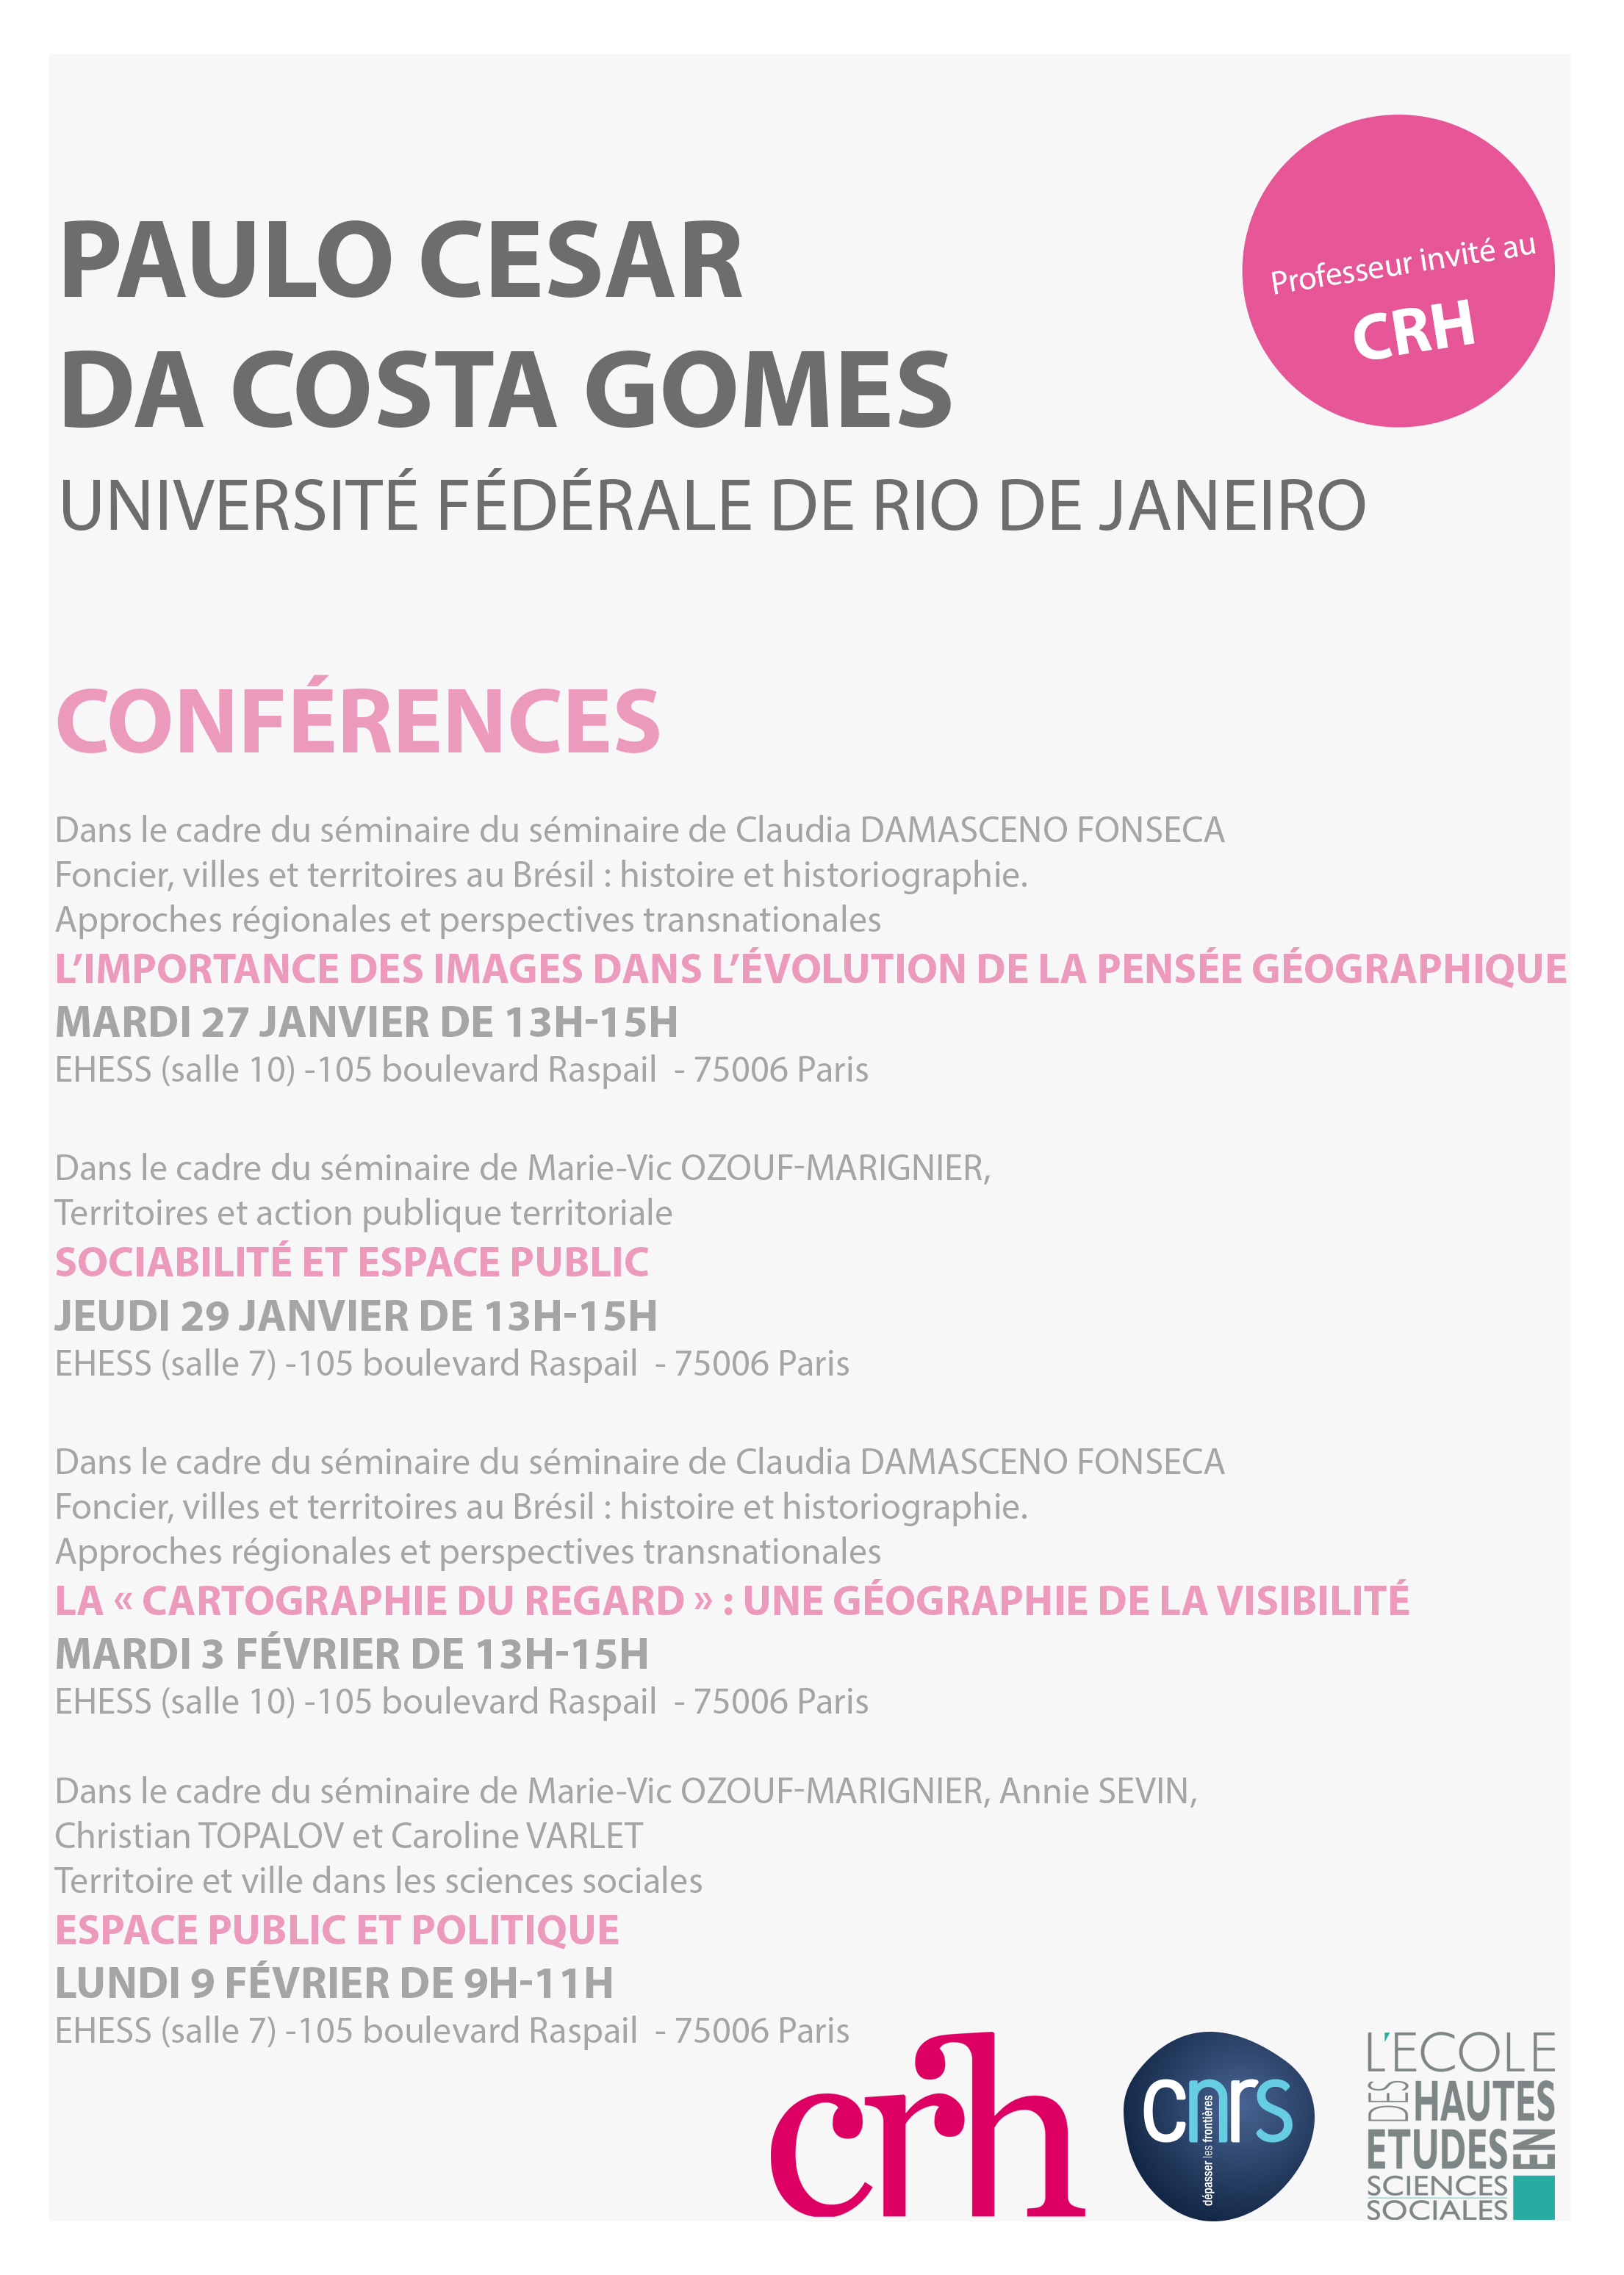 Conférences de Paulo Cesar da Costa Gomes